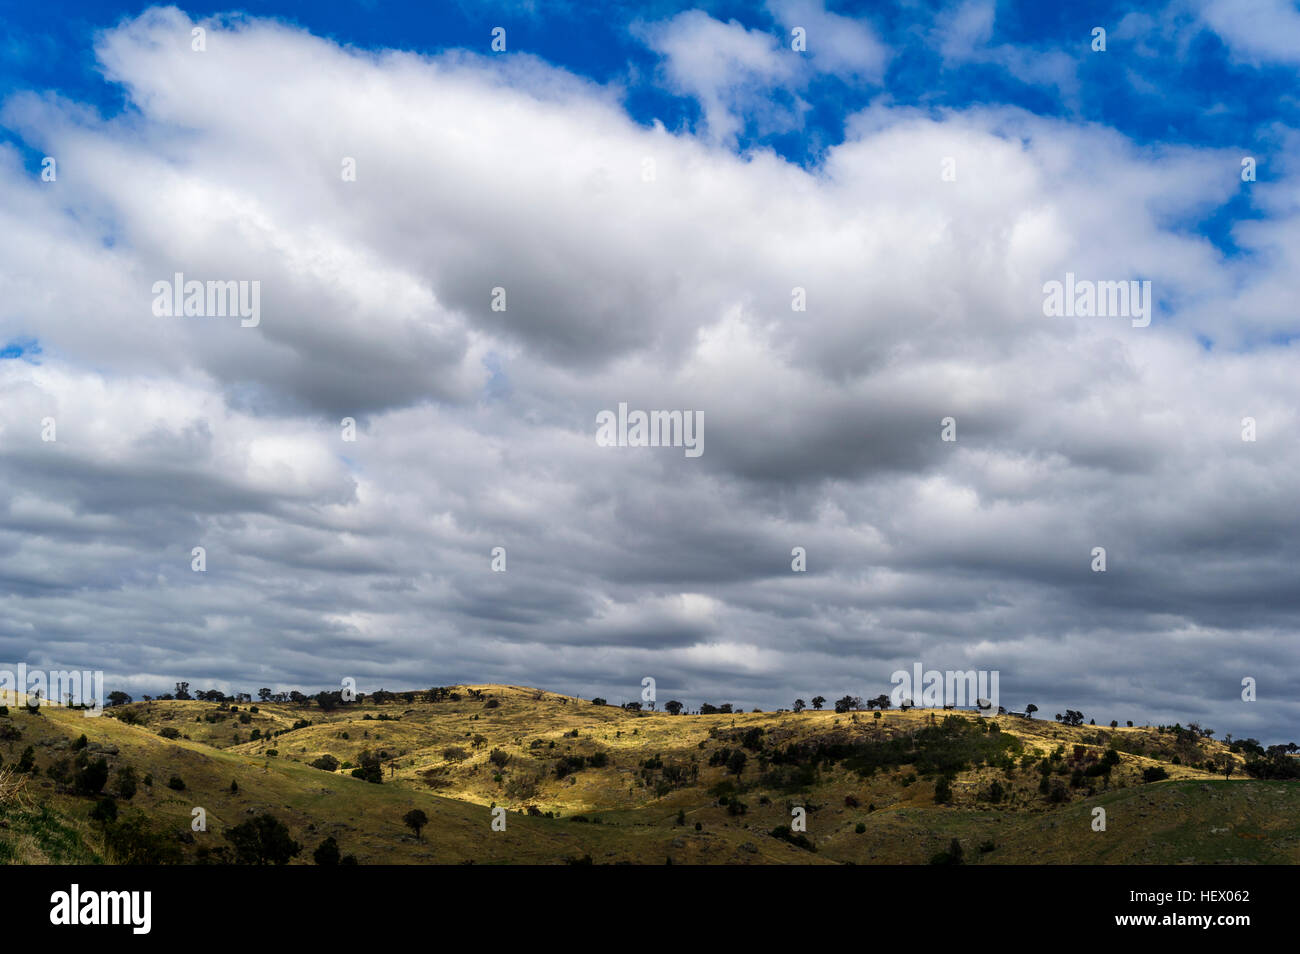 Des nuages de pluie au-dessus de terres agricoles vallonnées à sec un jour d'été. Banque D'Images